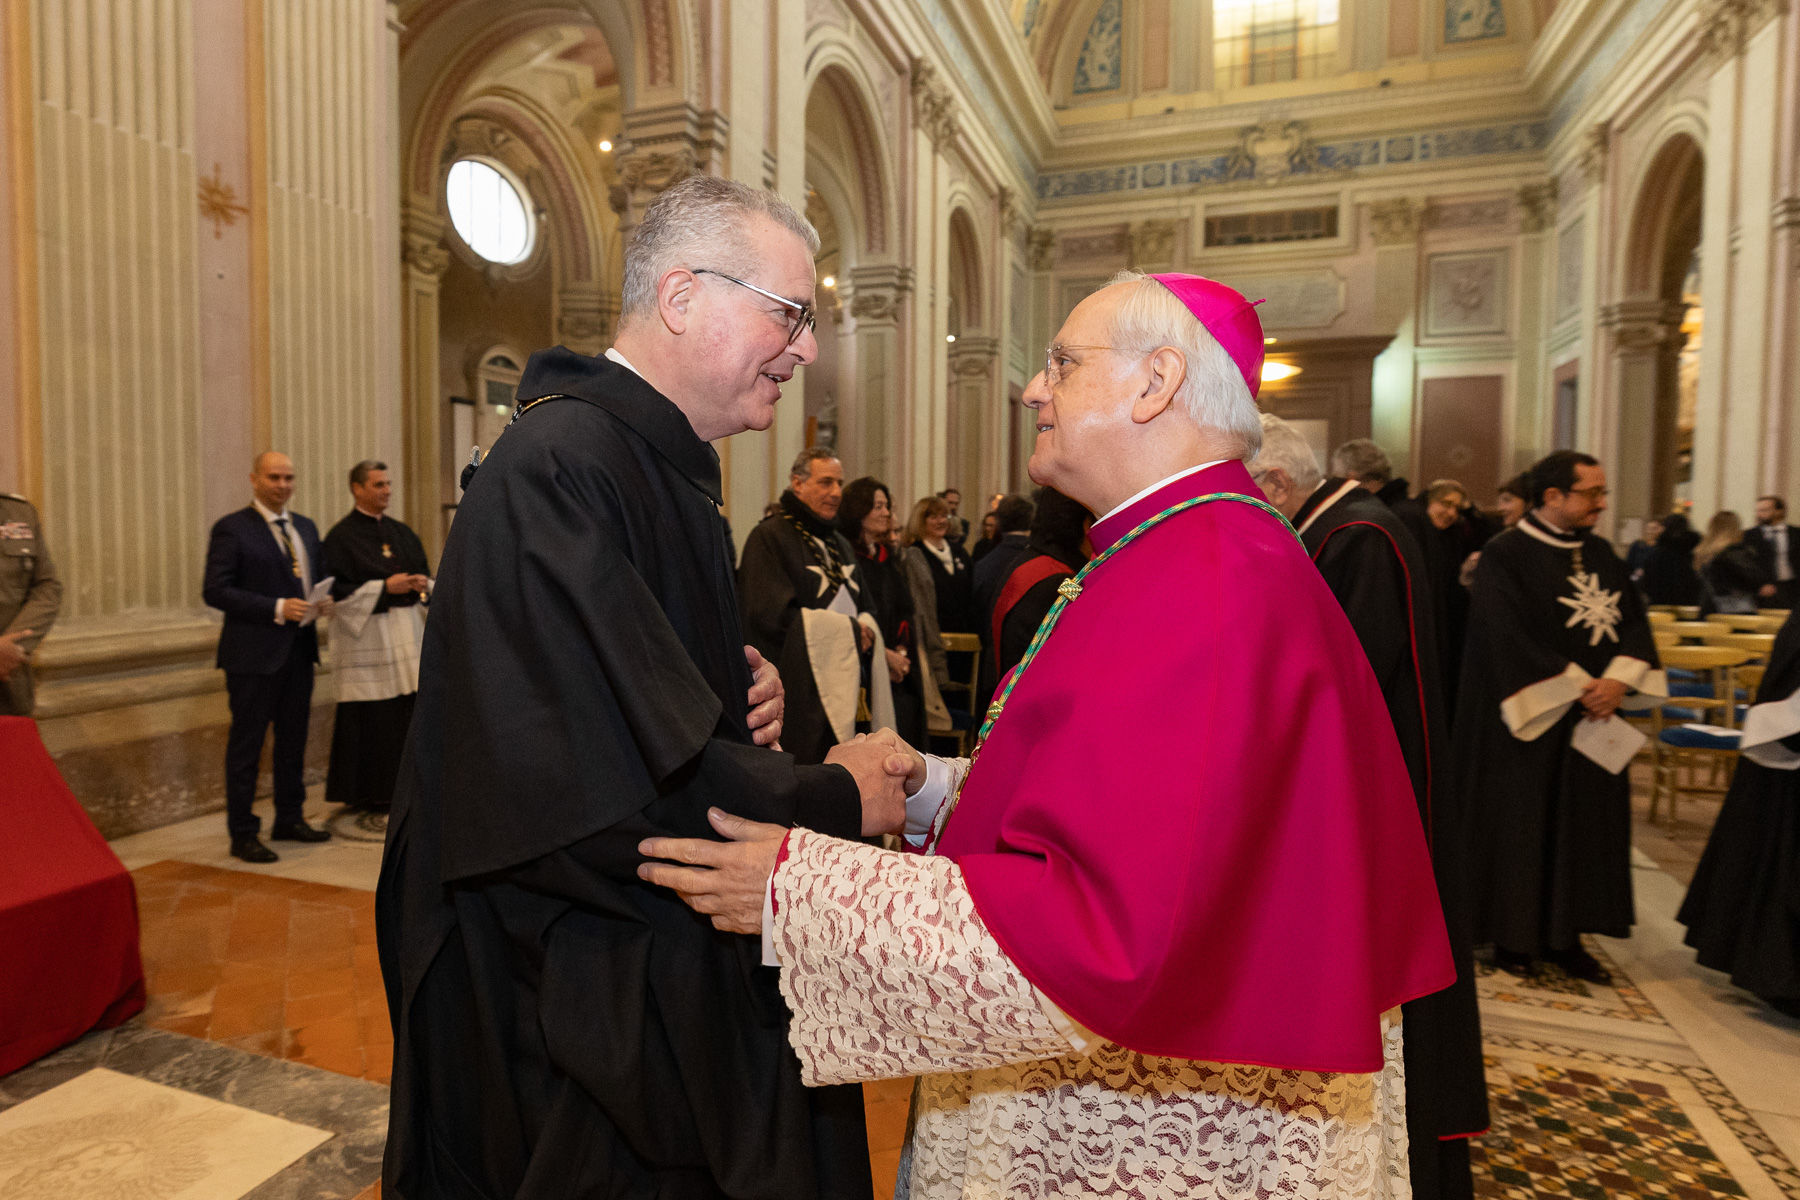 Messa di inizio mandato del Prelato dell’Ordine di Malta: invito a servire con gioia